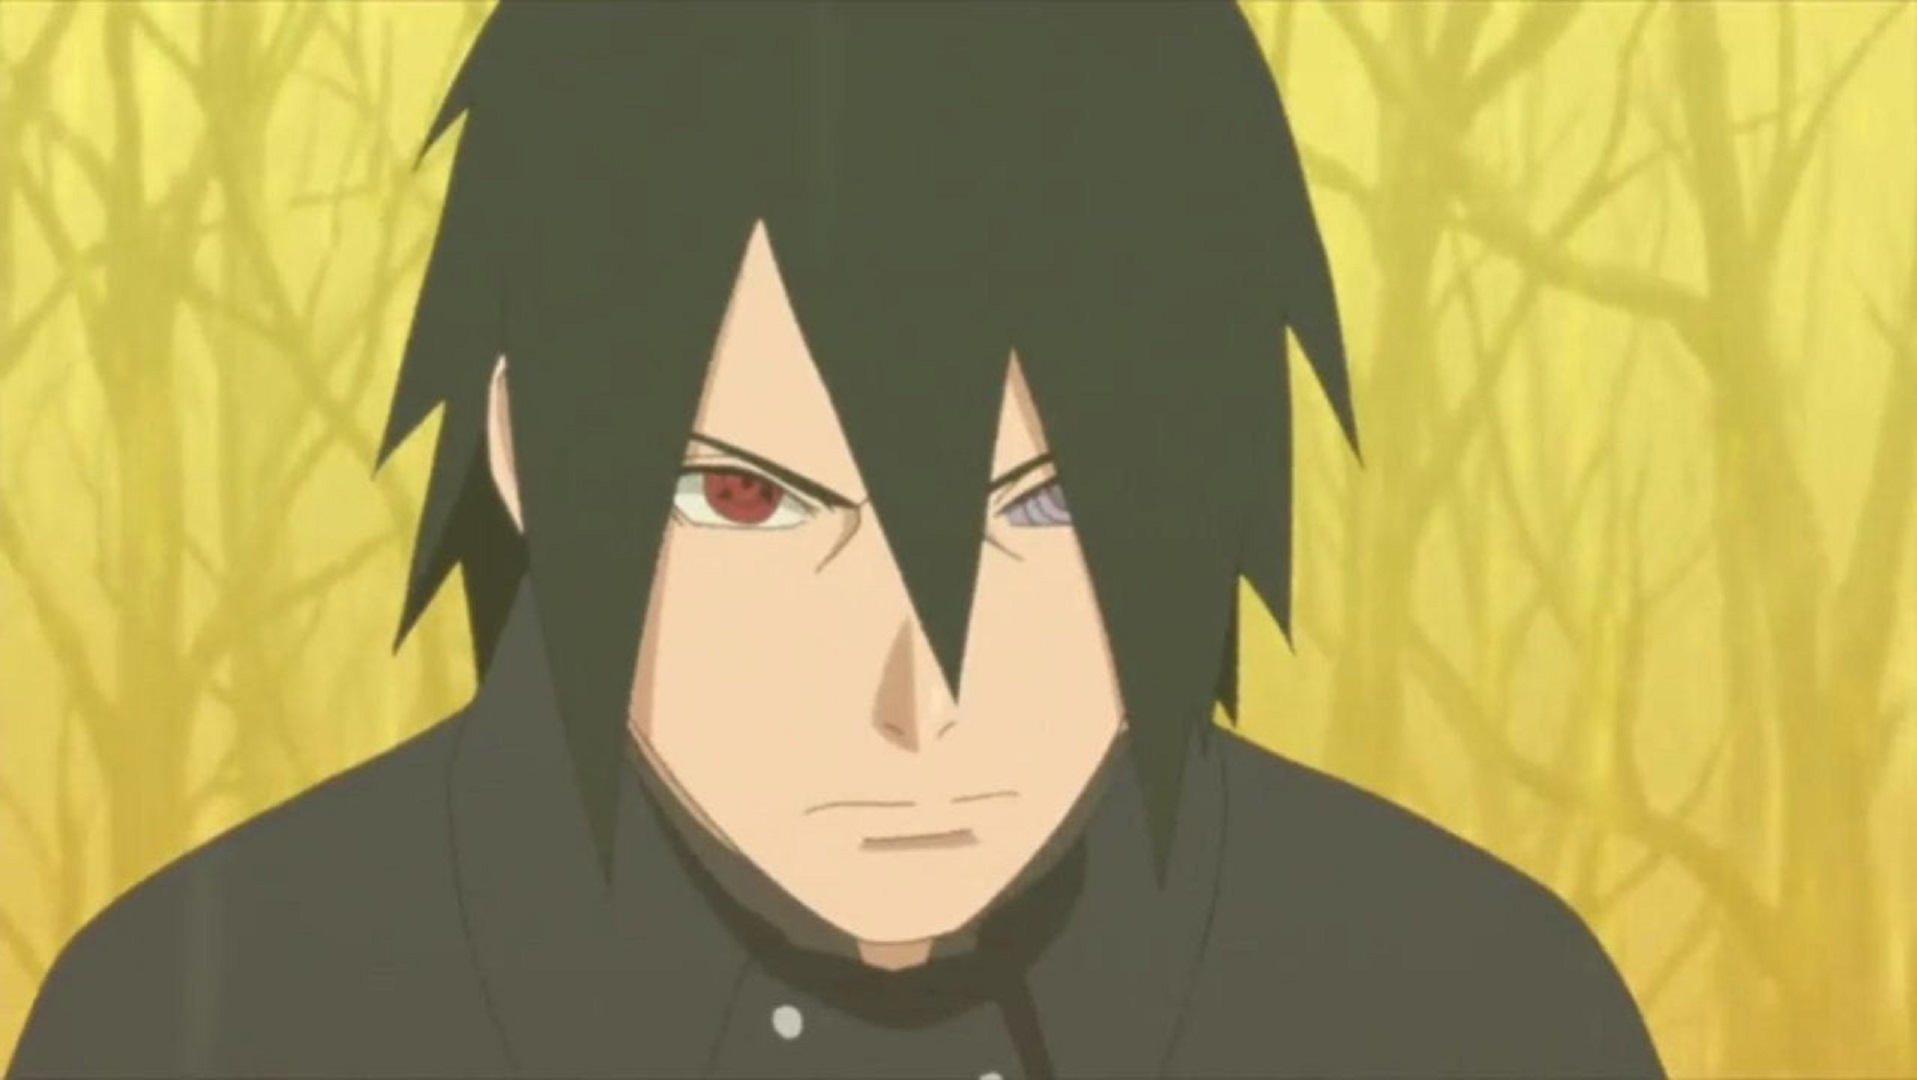 Afinal, a versão adulta do Sasuke é a pior dele apresentada até agora?